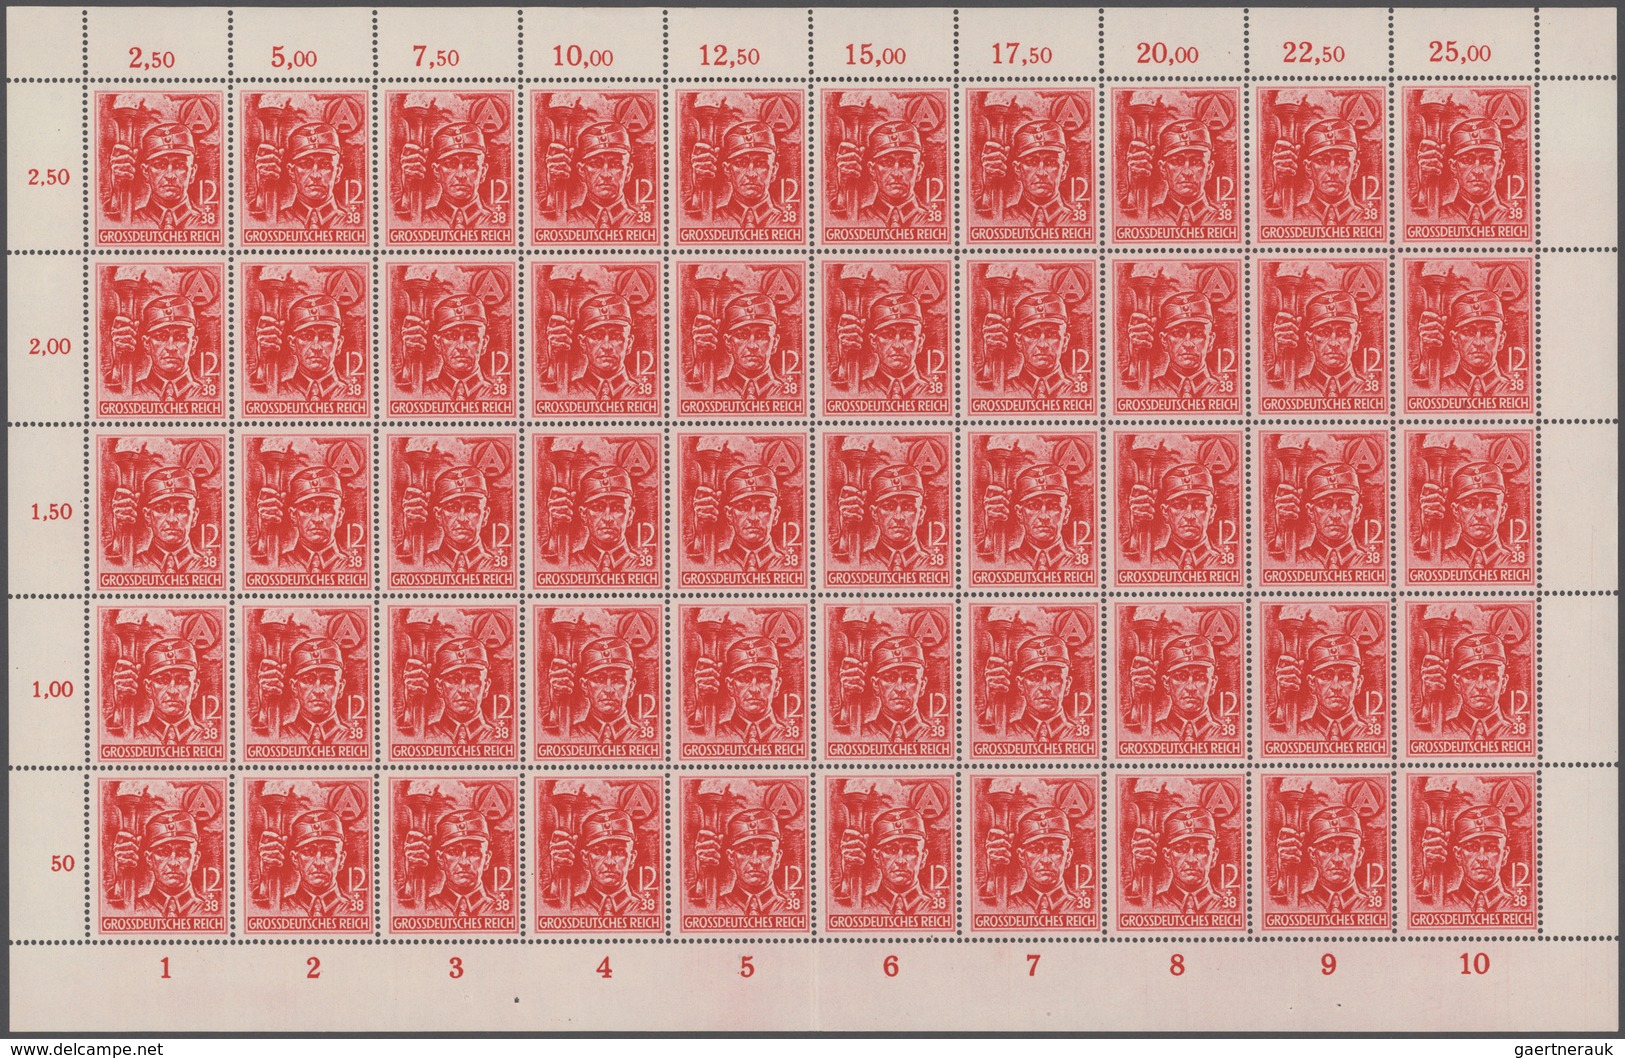 Deutsches Reich - 3. Reich: 1945, SA/SS Gezähnt, 2.000 Komplette Serien In Einheiten, Postfrisch. Mi - Covers & Documents